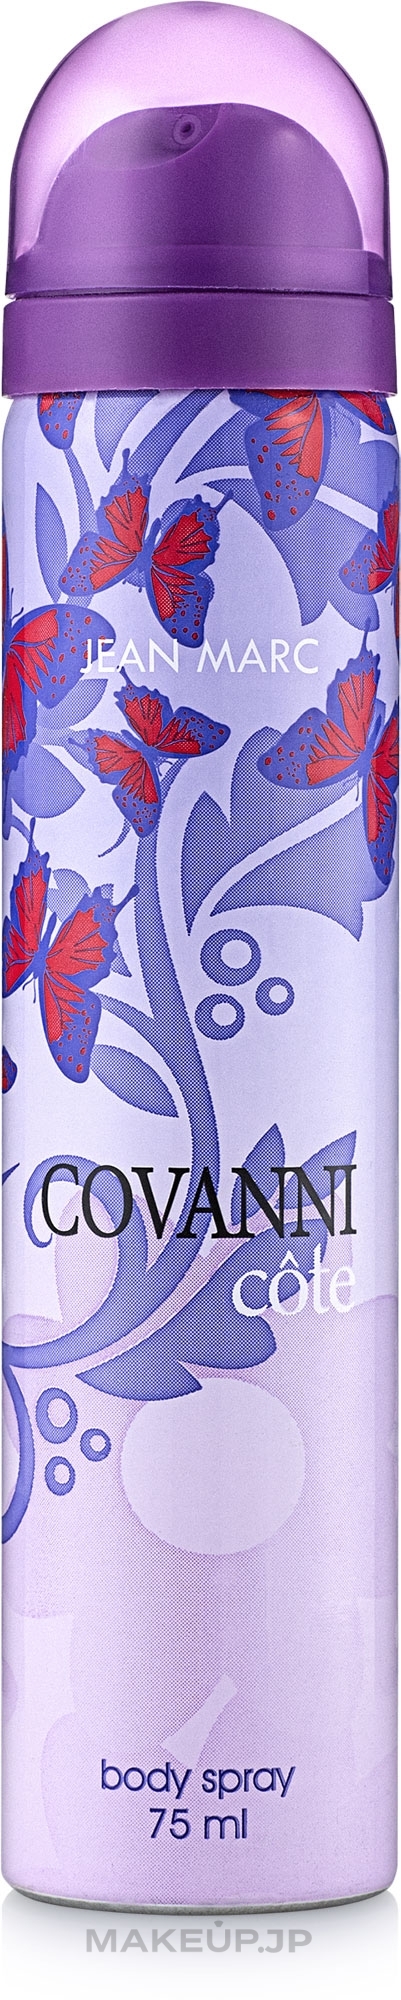 Jean Marc Covanni Cote - Deodorant — photo 75 ml